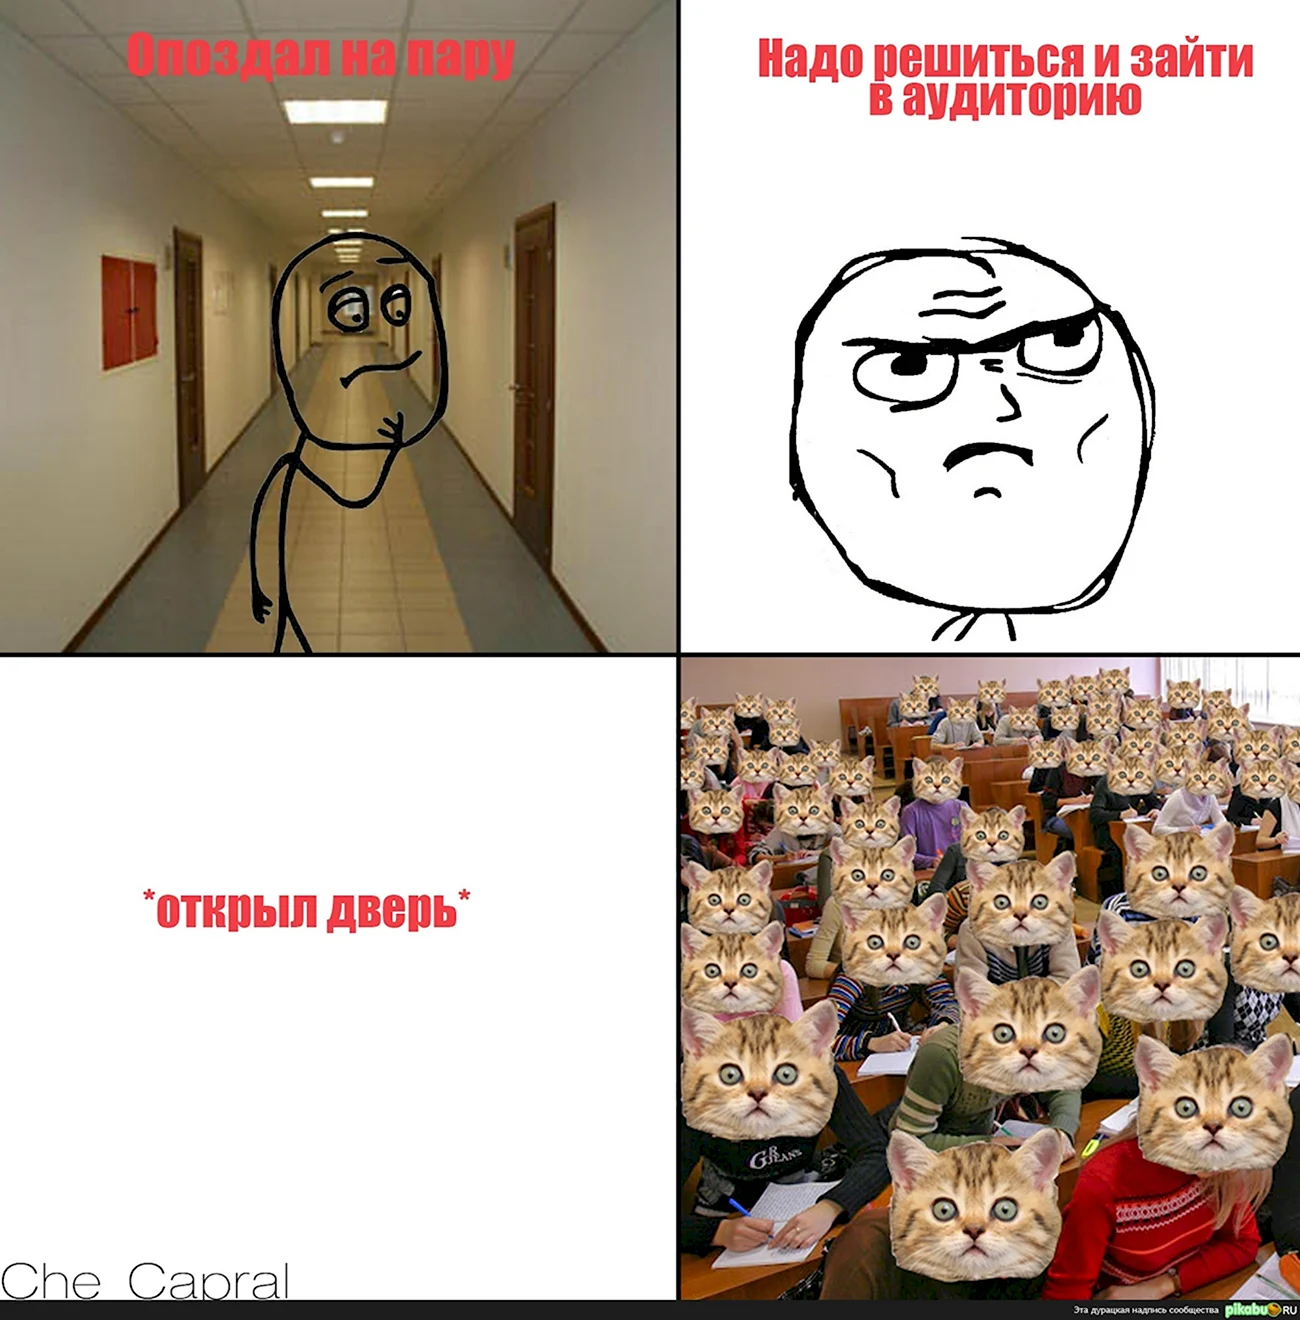 Мемы про университет. Картинка